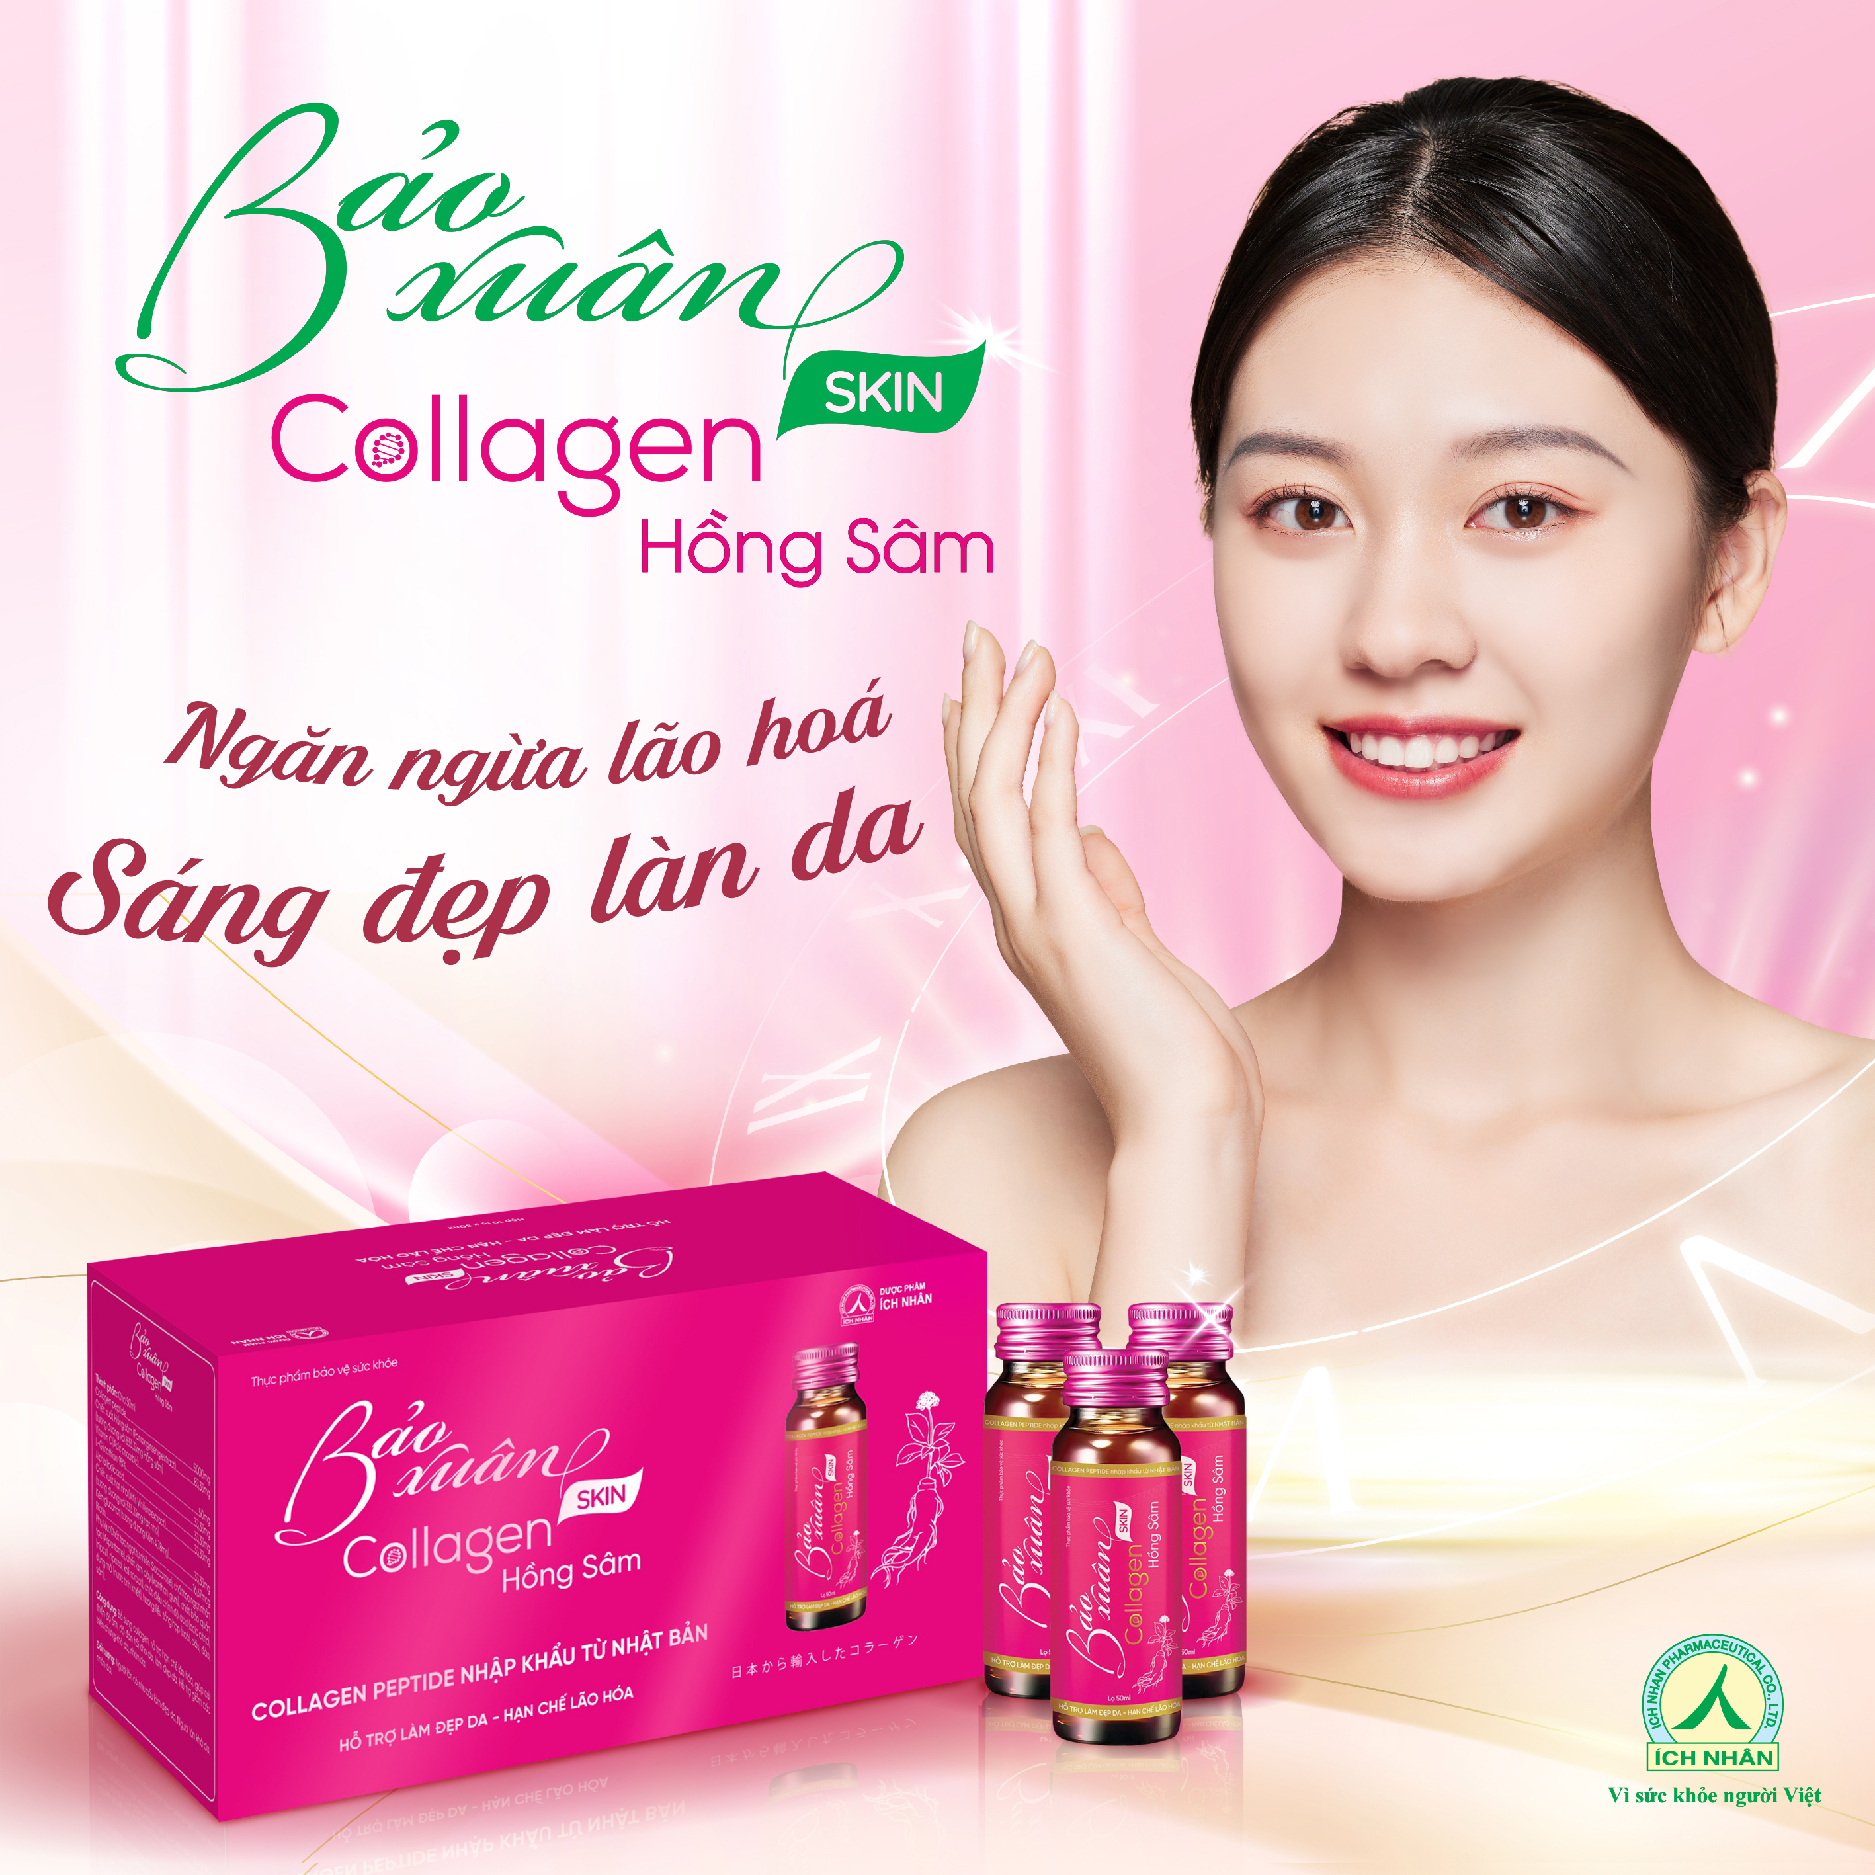 Nước Uống Bổ Sung Bảo Xuân Skin Collagen Hồng Sâm giúp hạn chế lão hóa, tăng đàn hồi cho da, làm sáng đẹp da Hộp 10 Lọ x50ml